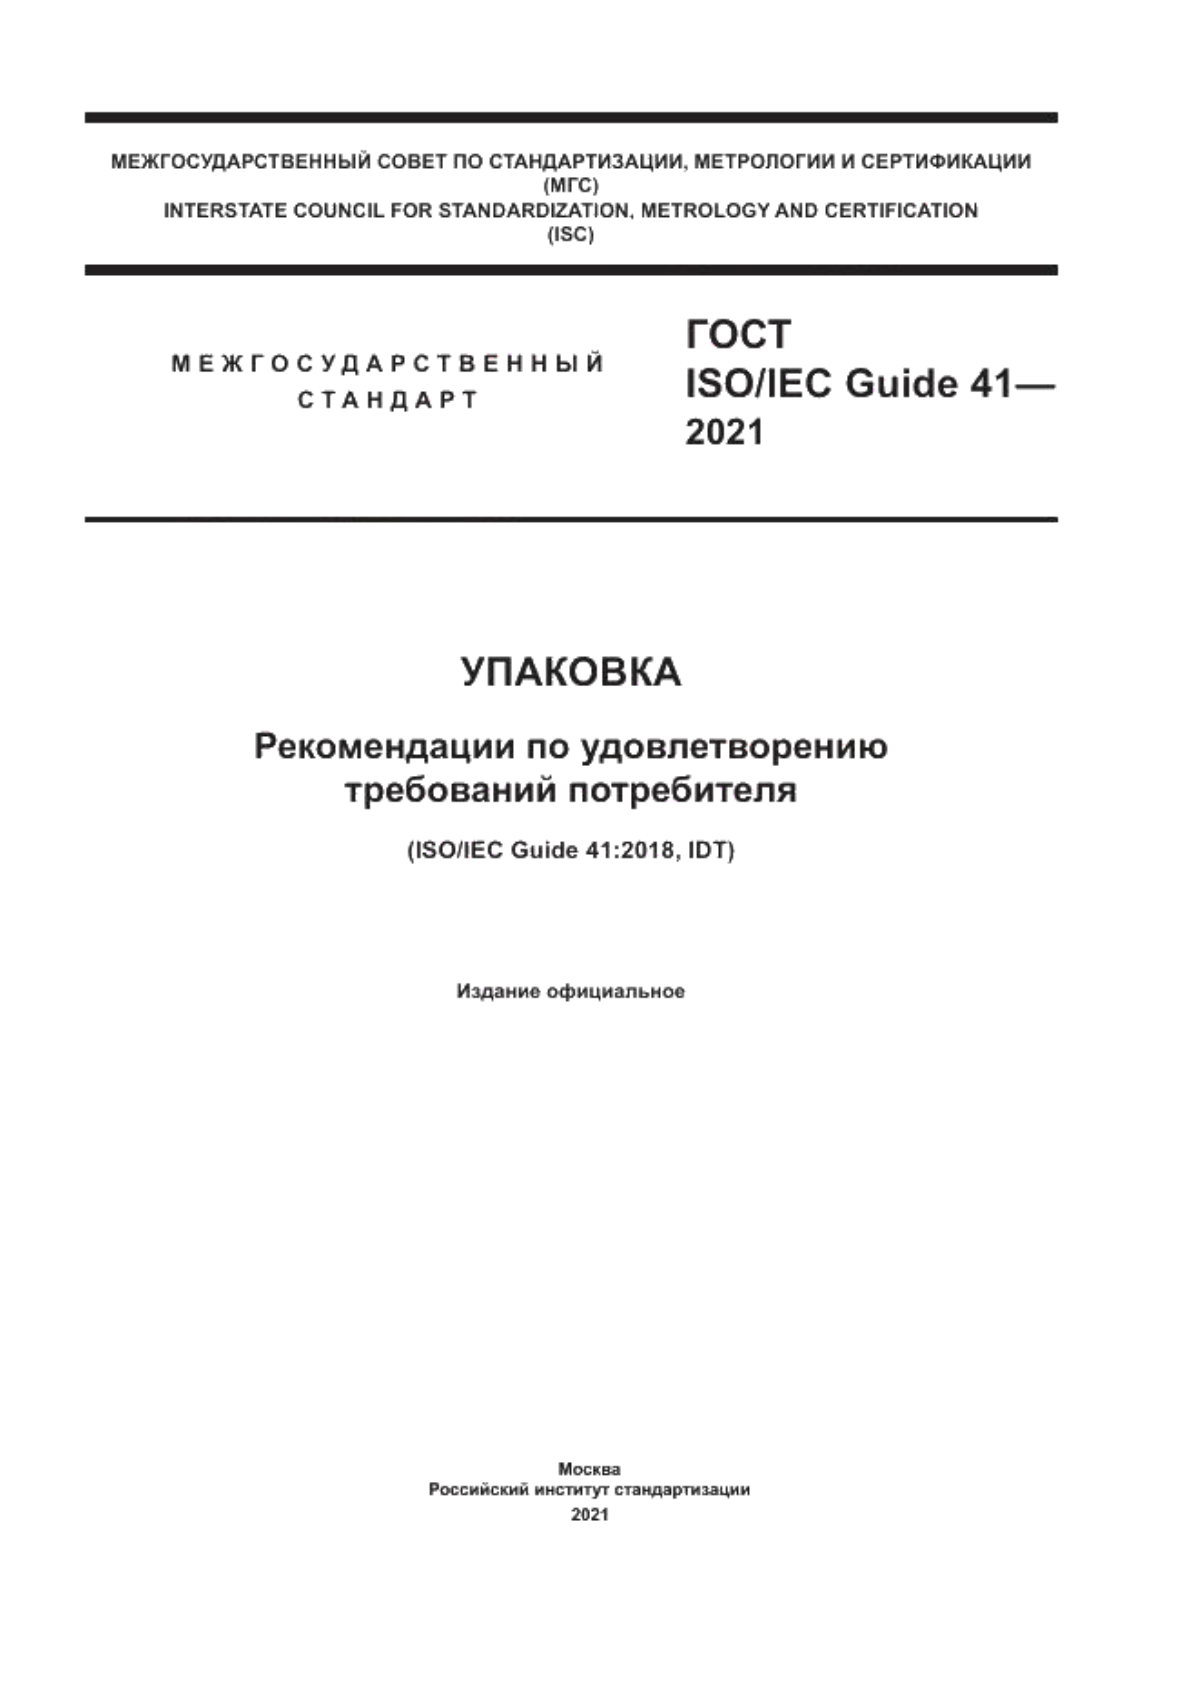 ГОСТ ISO/IEC Guide 41-2021 Упаковка. Рекомендации по удовлетворению требований потребителя